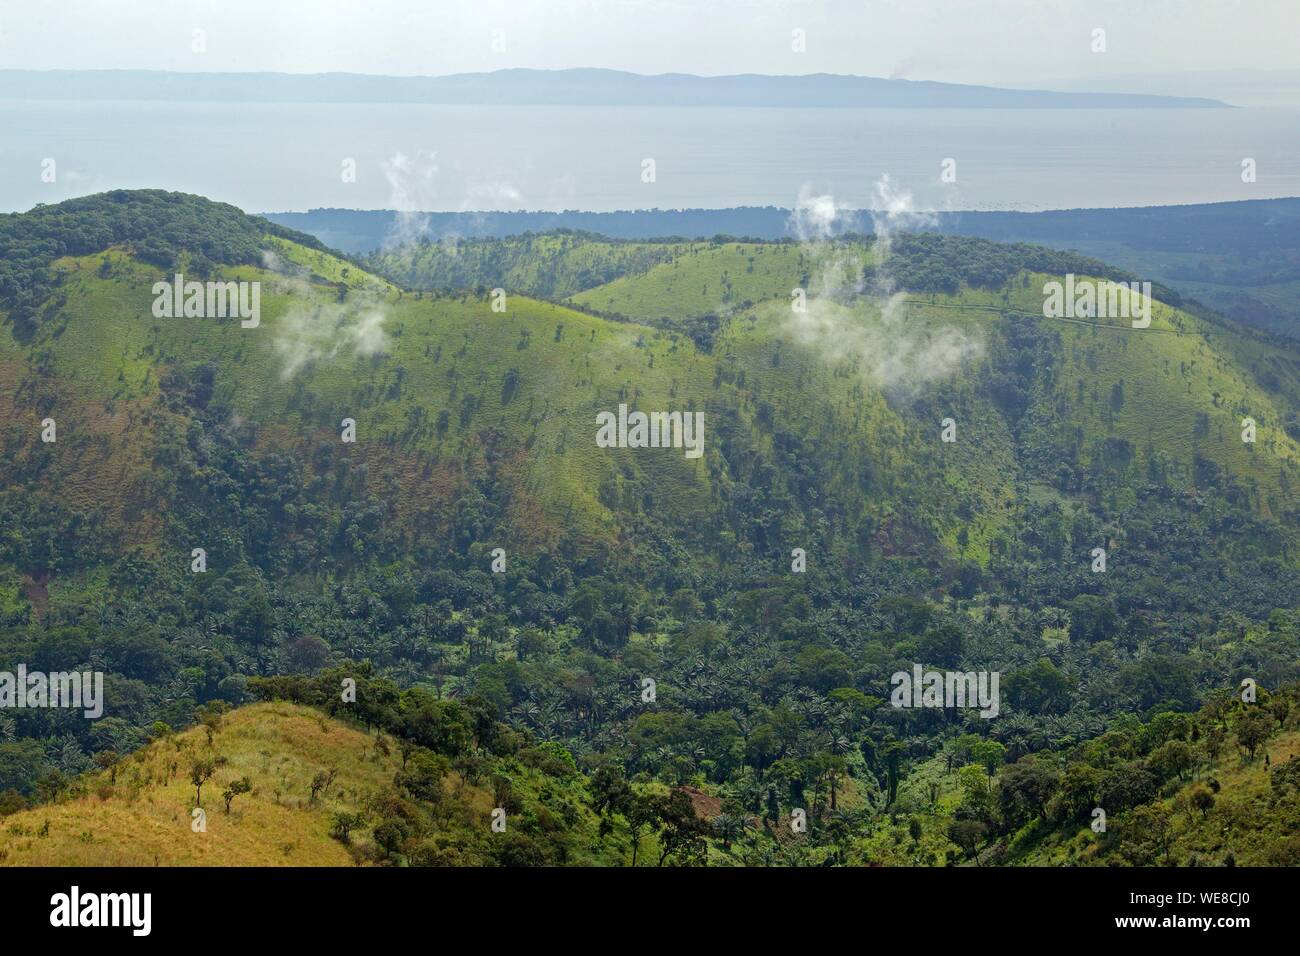 Burundi, Vyanda Nature Reserve in the bututsi Stock Photo - Alamy